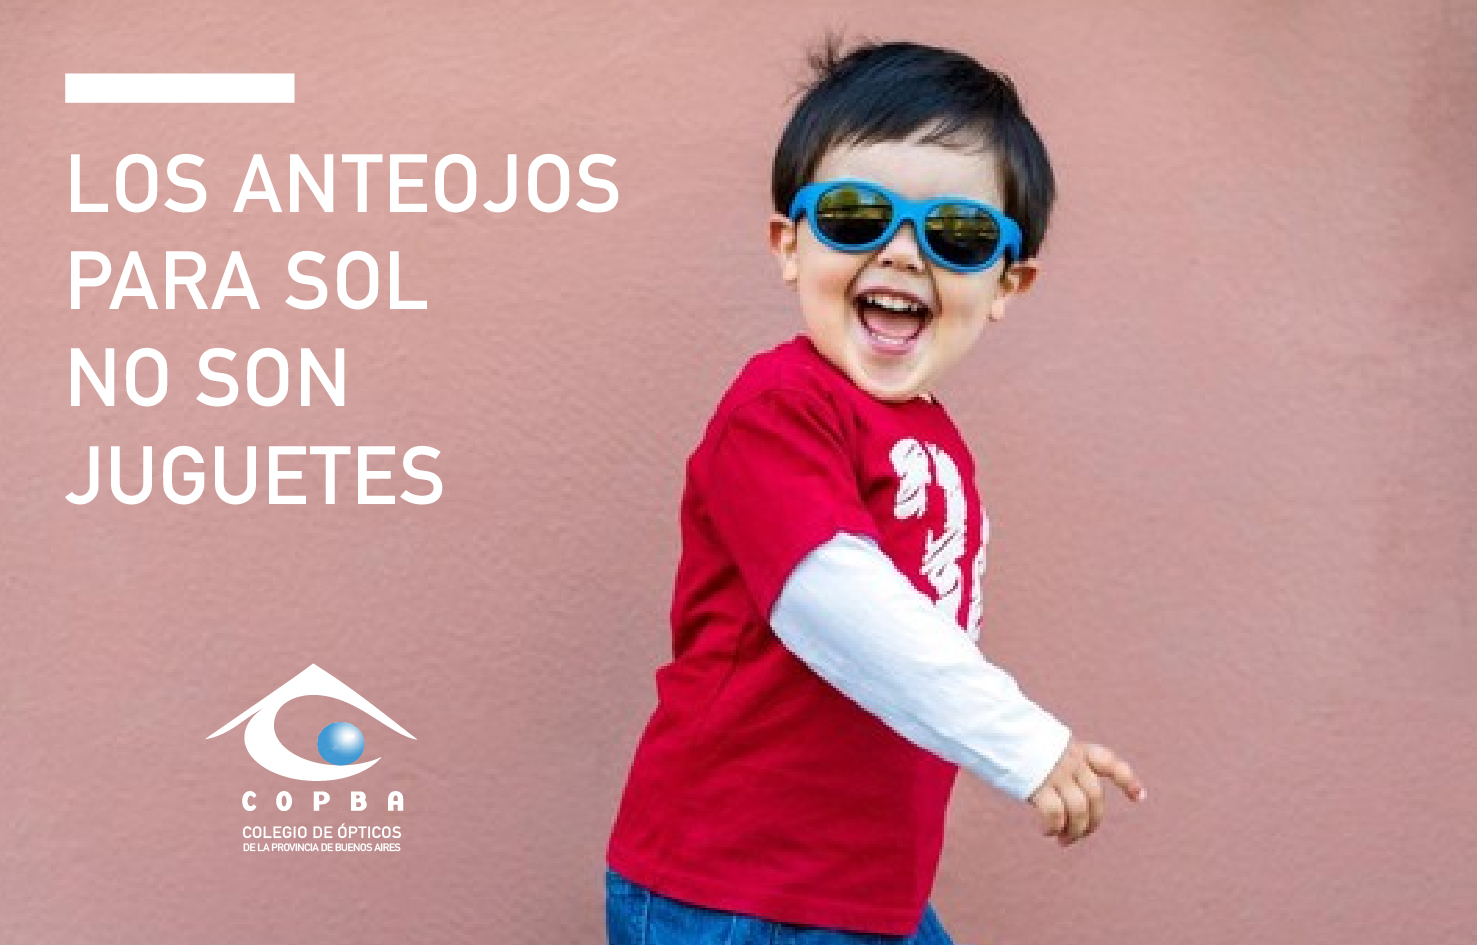 Gafas de sol para niños: eligiendo la mejor protección para los ojos de su  hijo